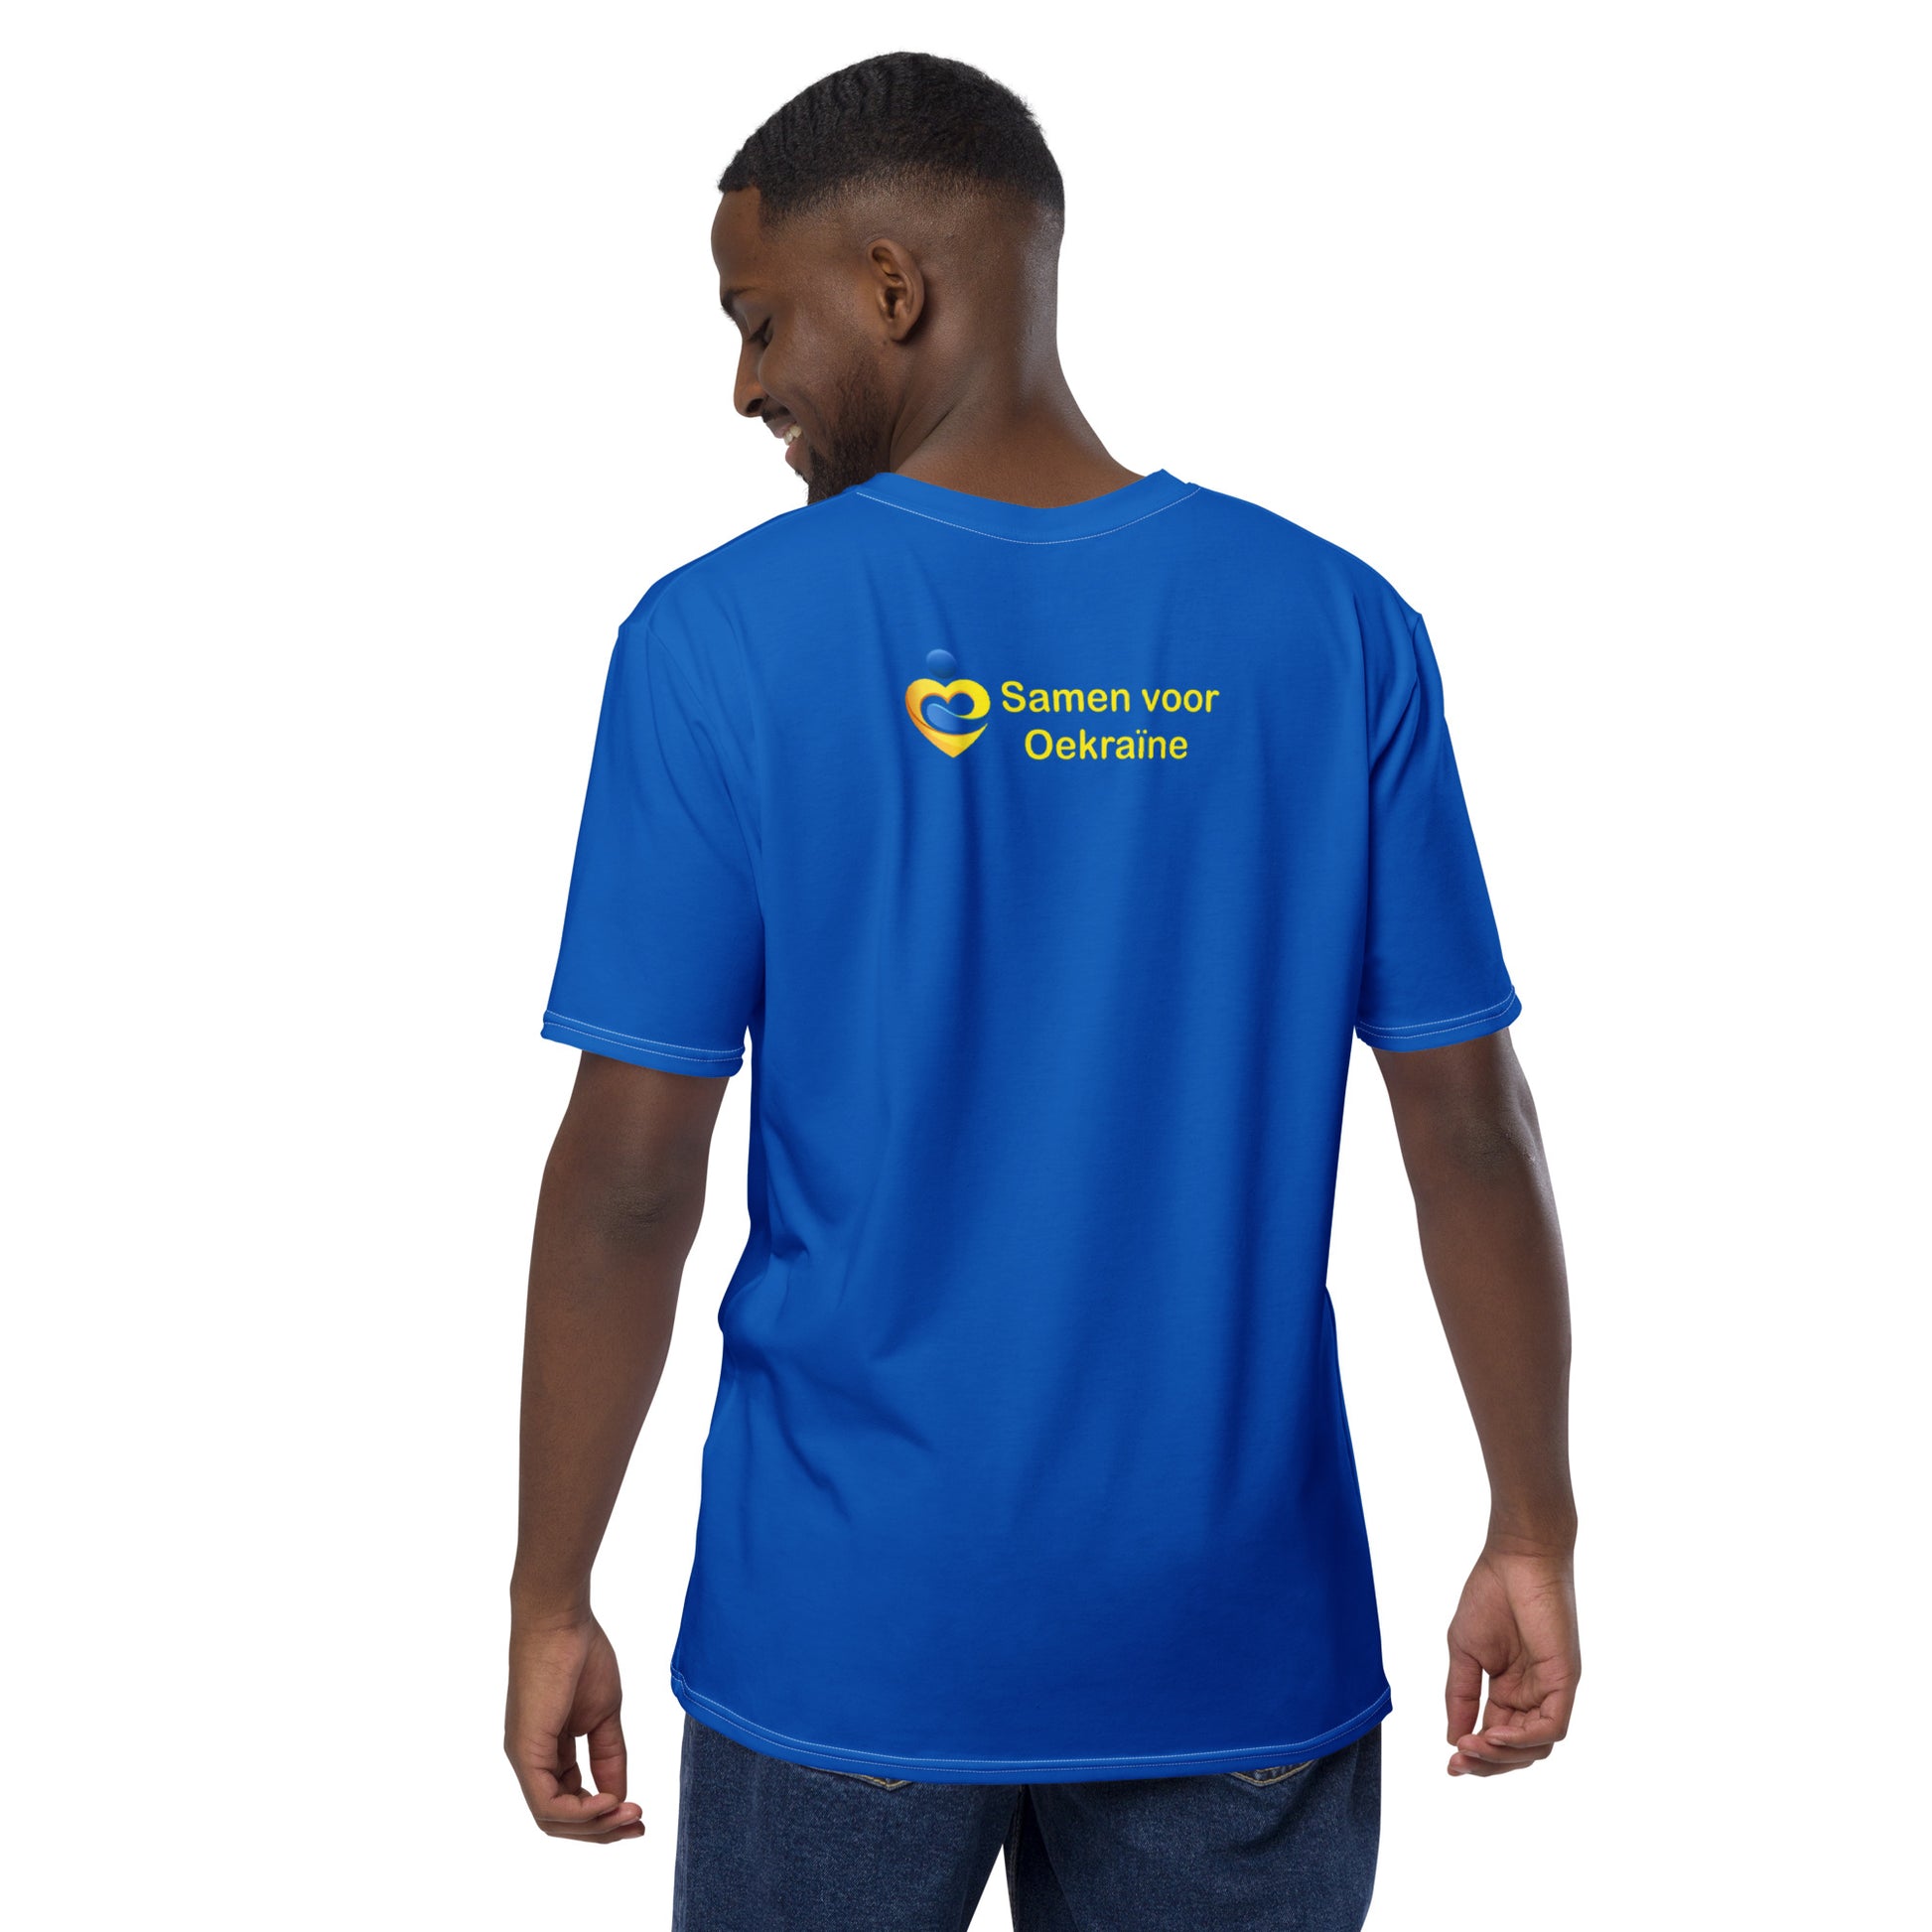 Foundation Together For Ukraine t-shirt for men